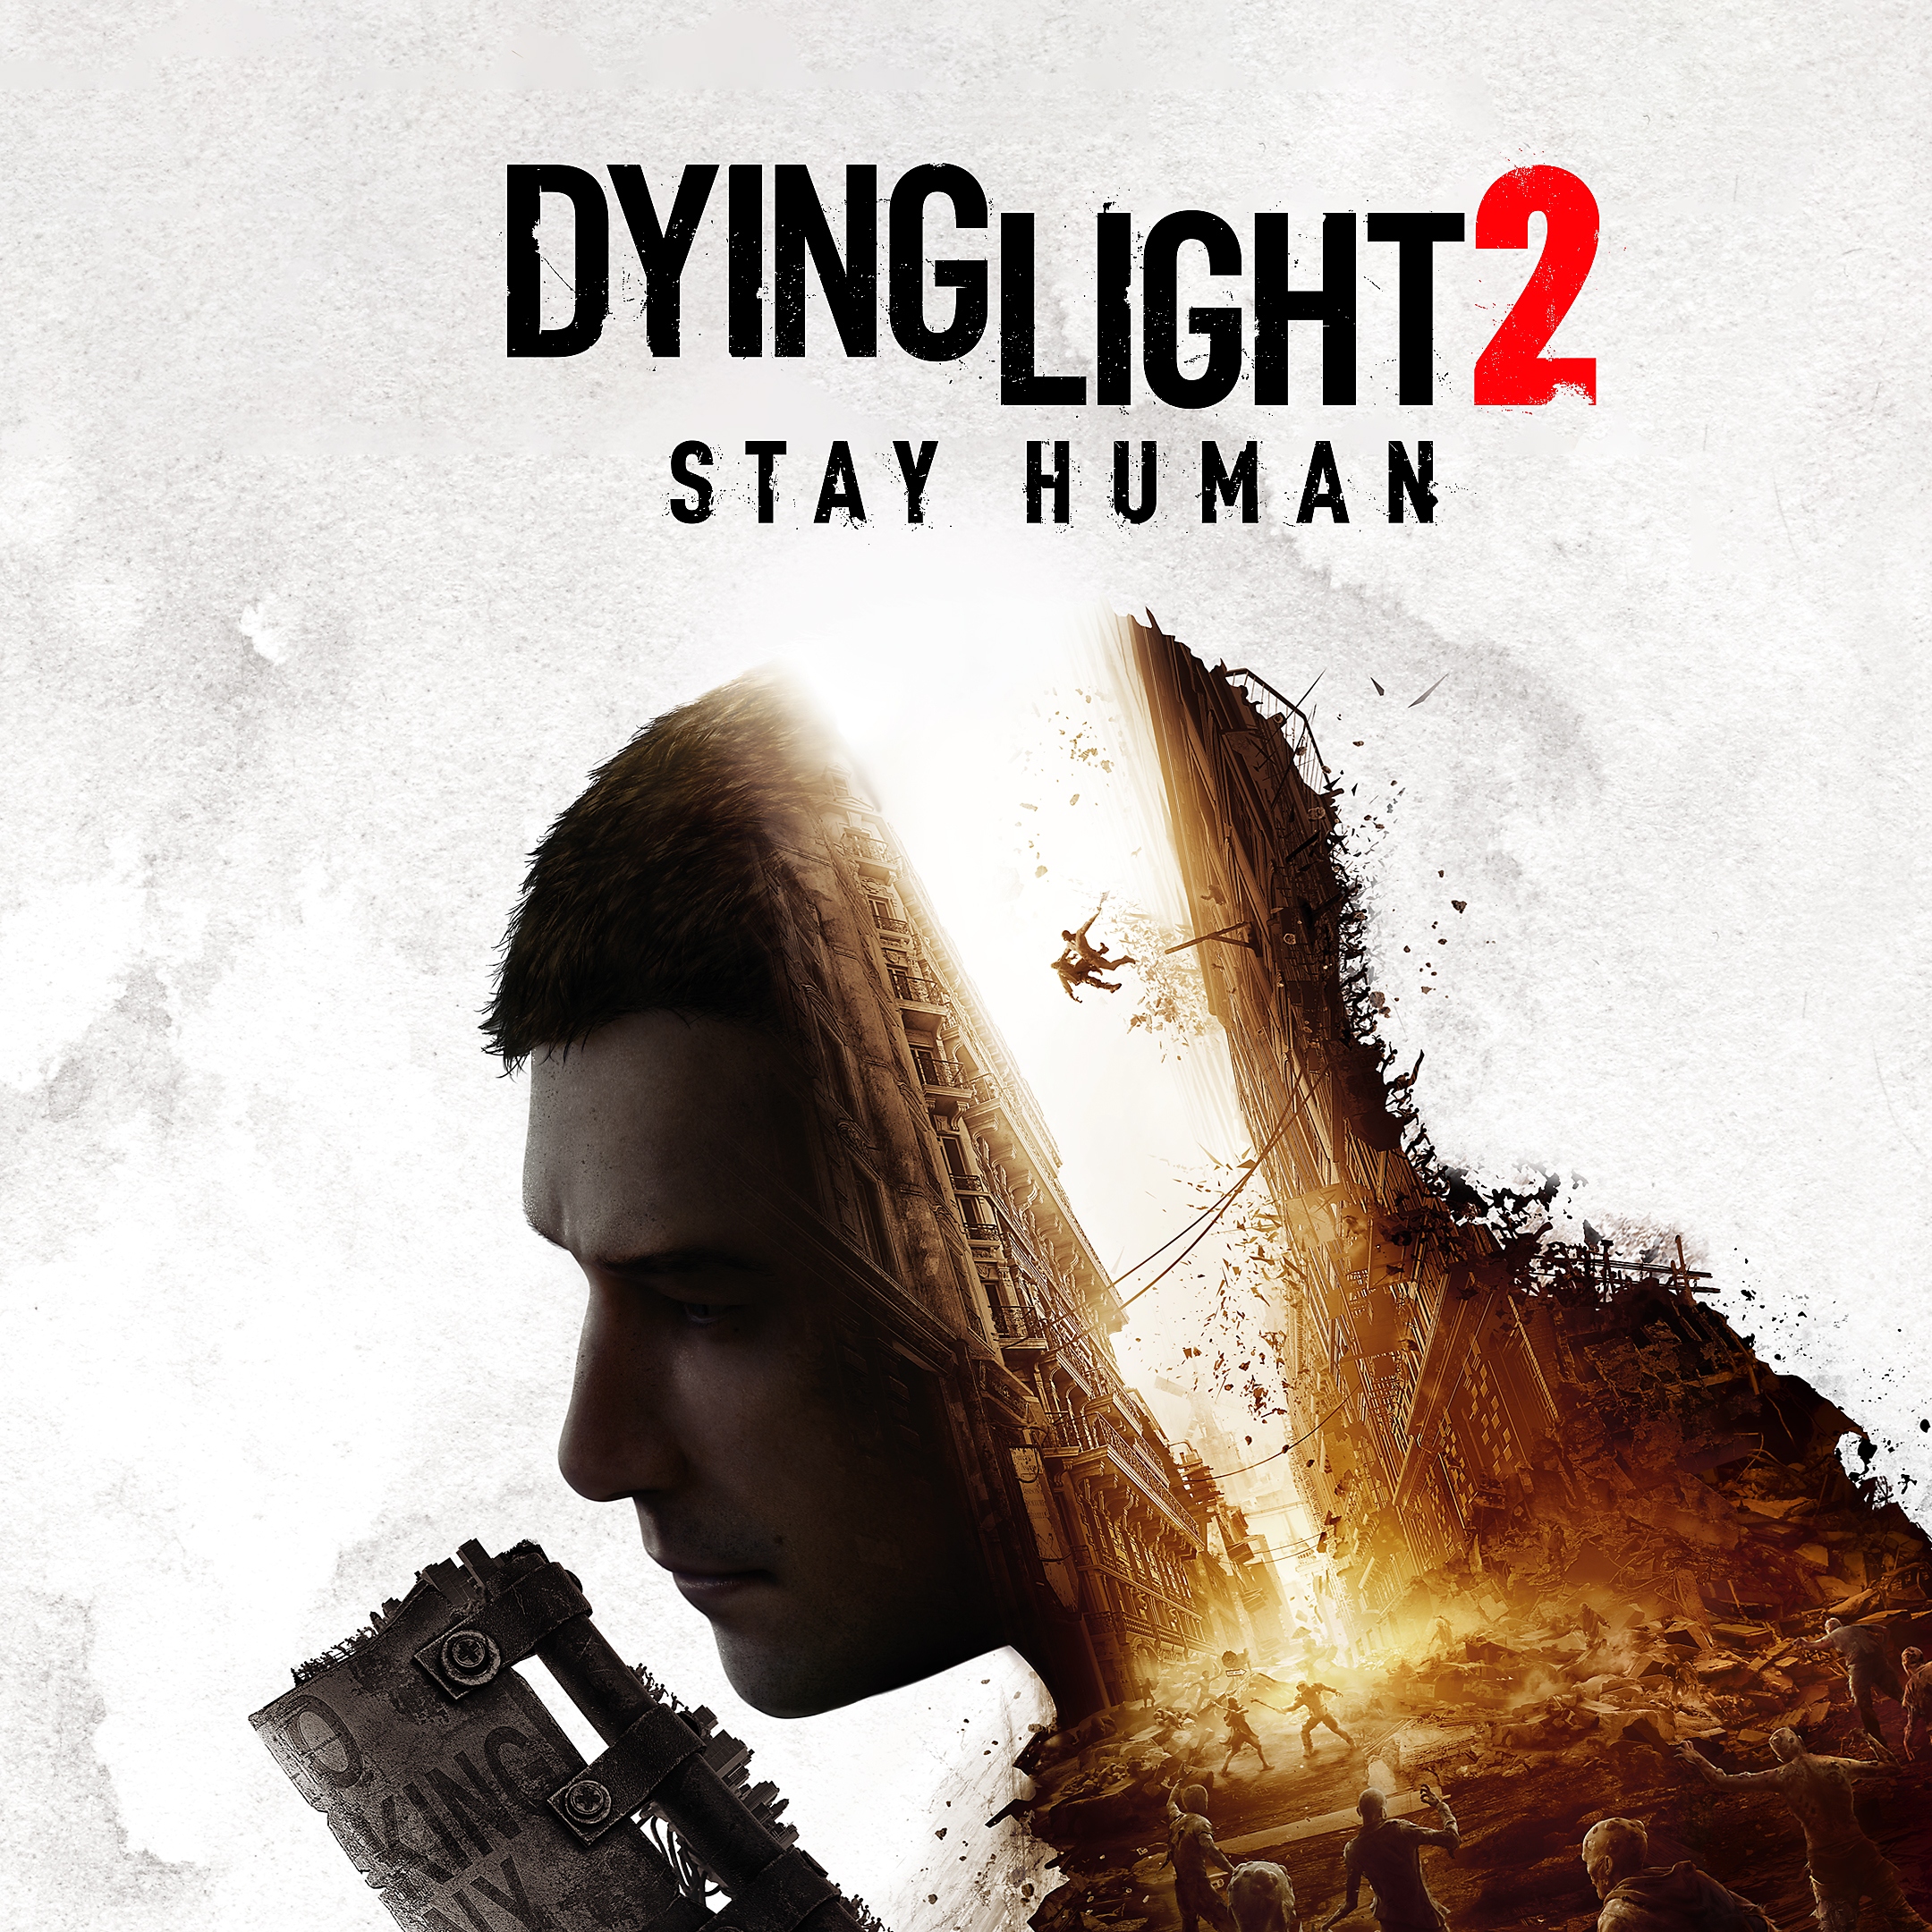 Ilustración para tiendas de Dying Light 2: Stay Human